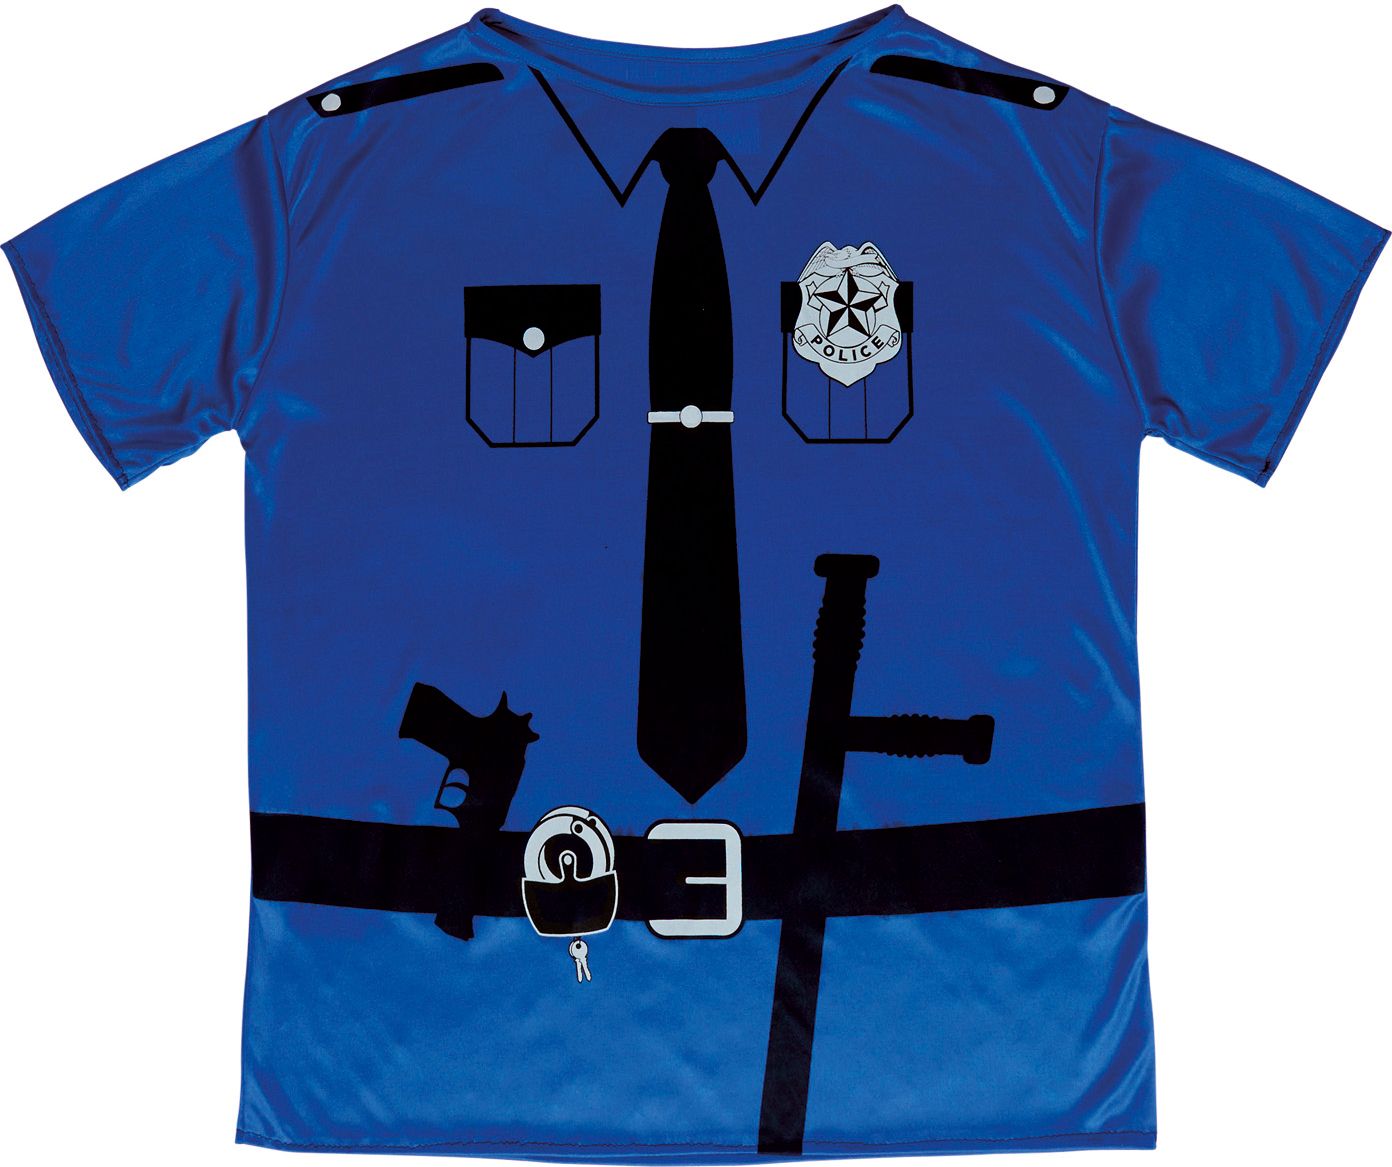 Politie shirt